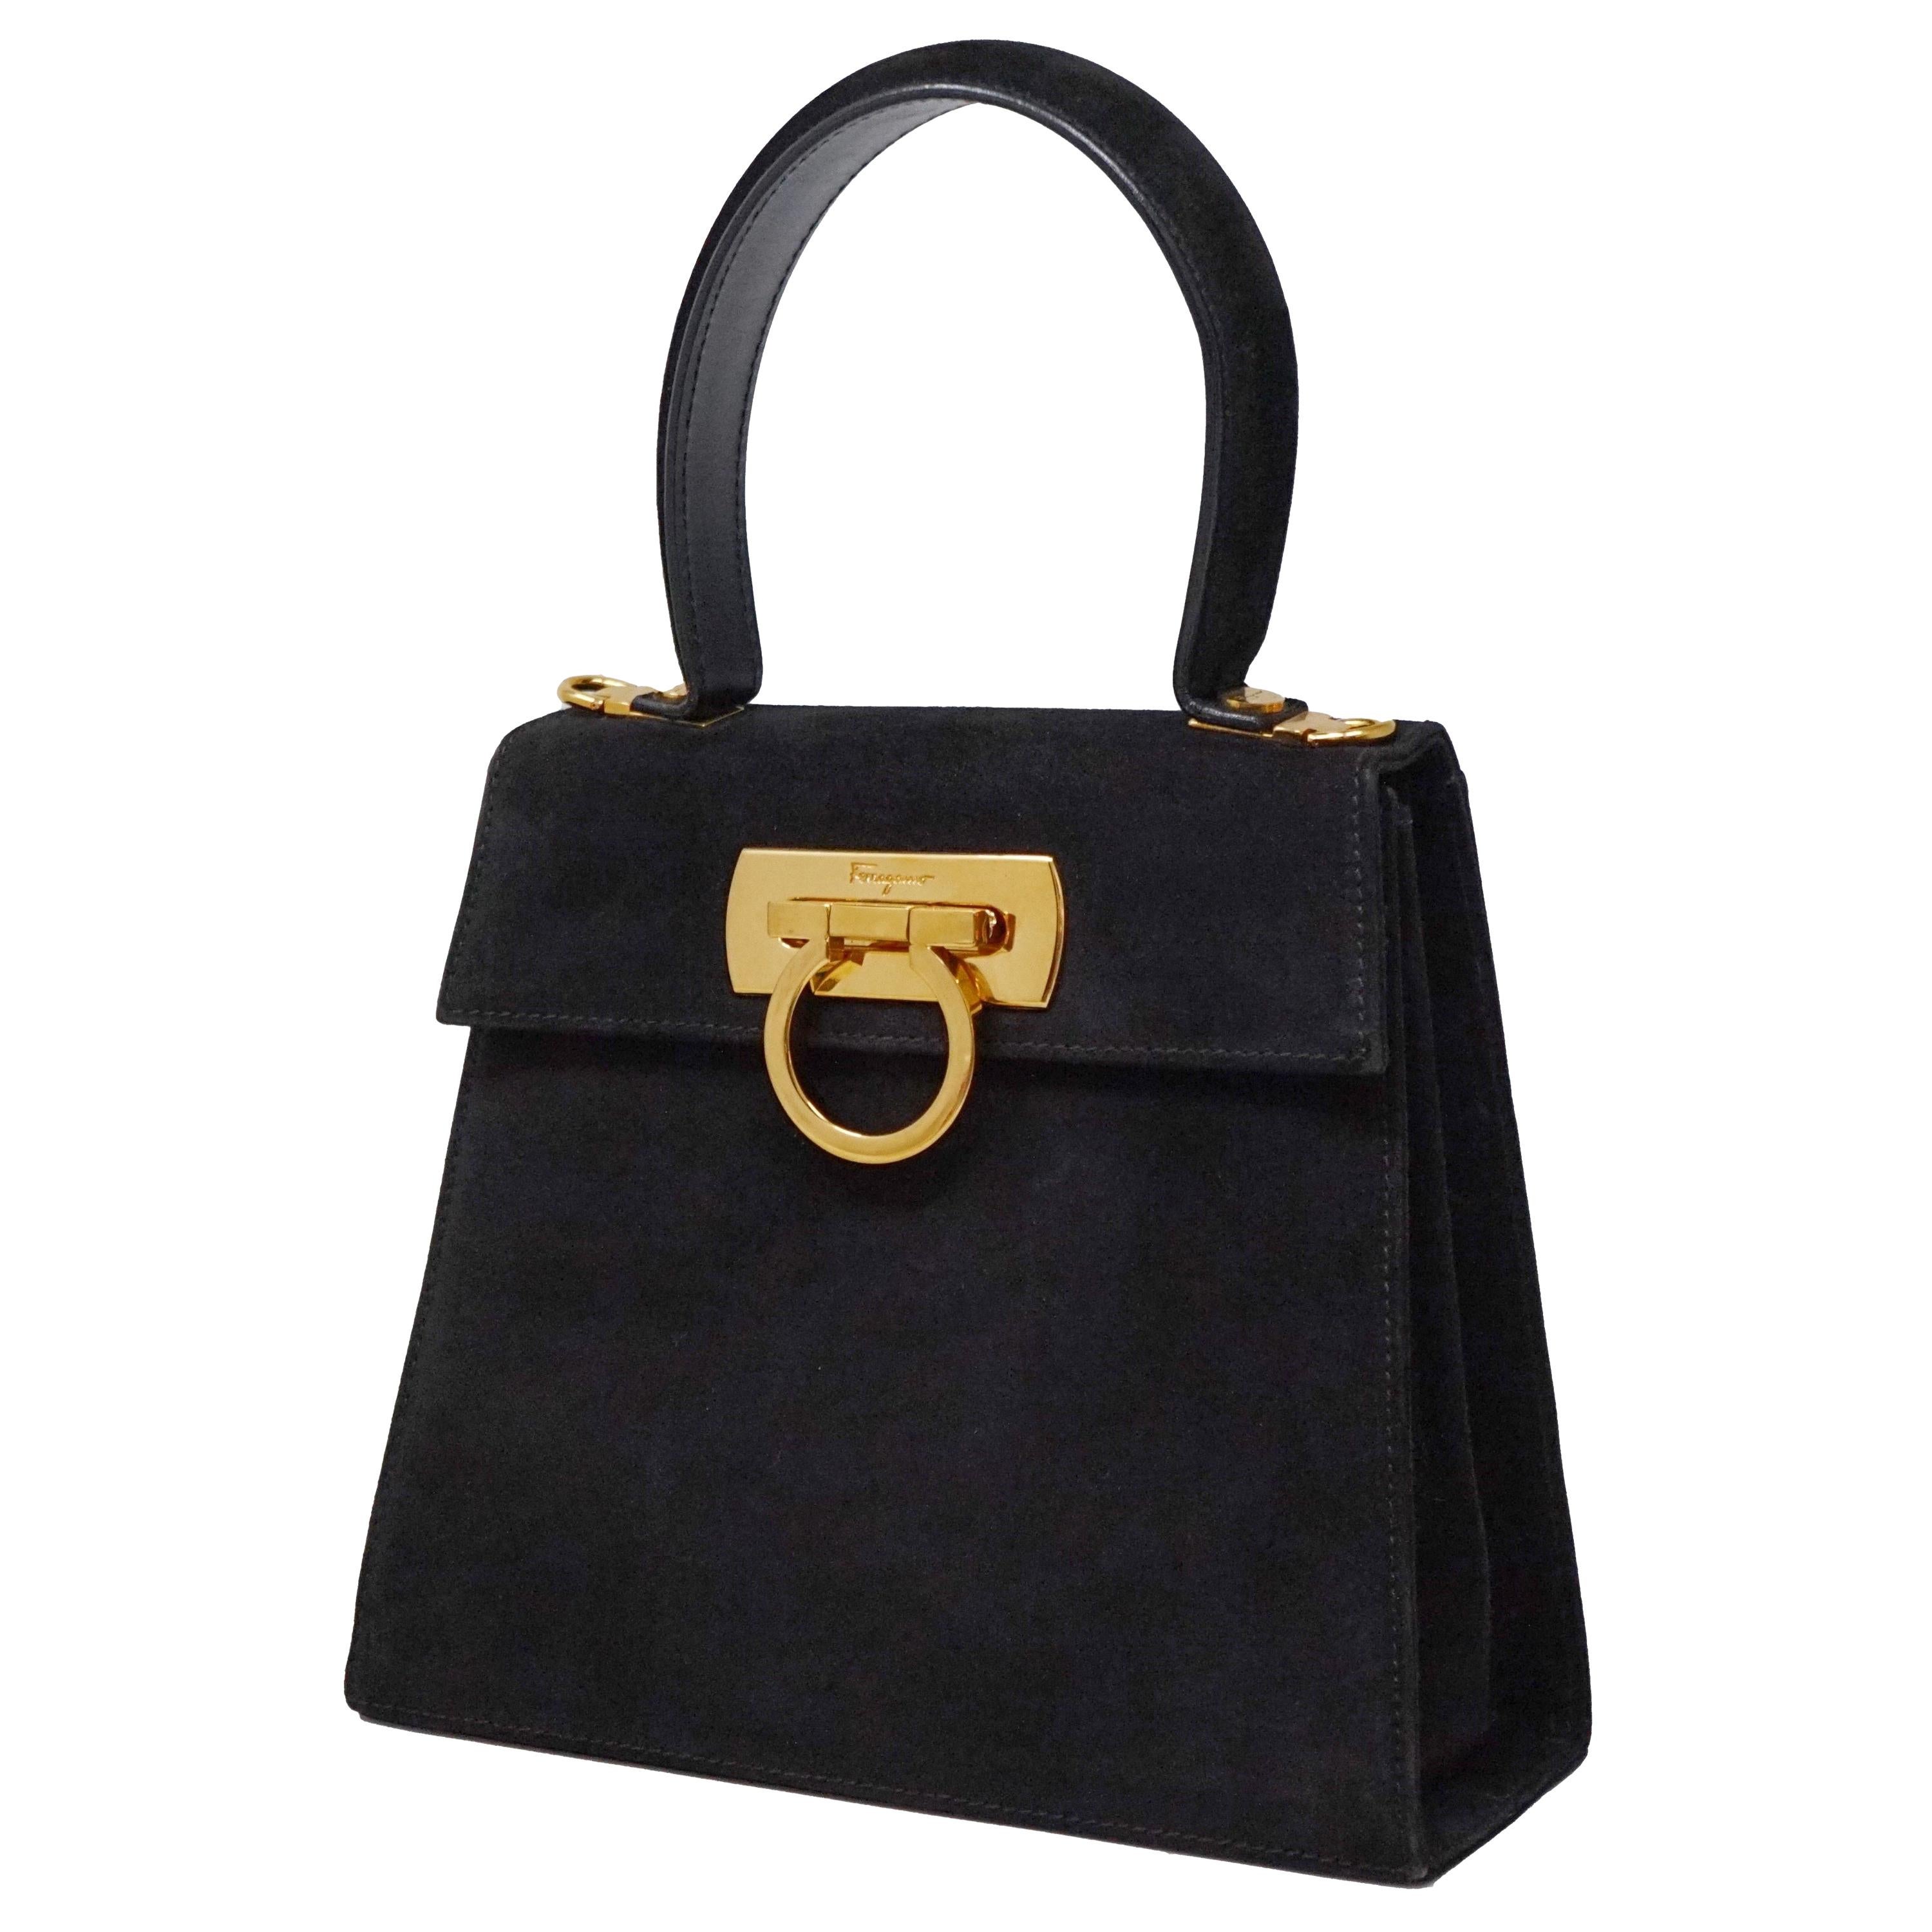 Salvatore Ferragamo Black Suede Kelly Style Vintage Handbag